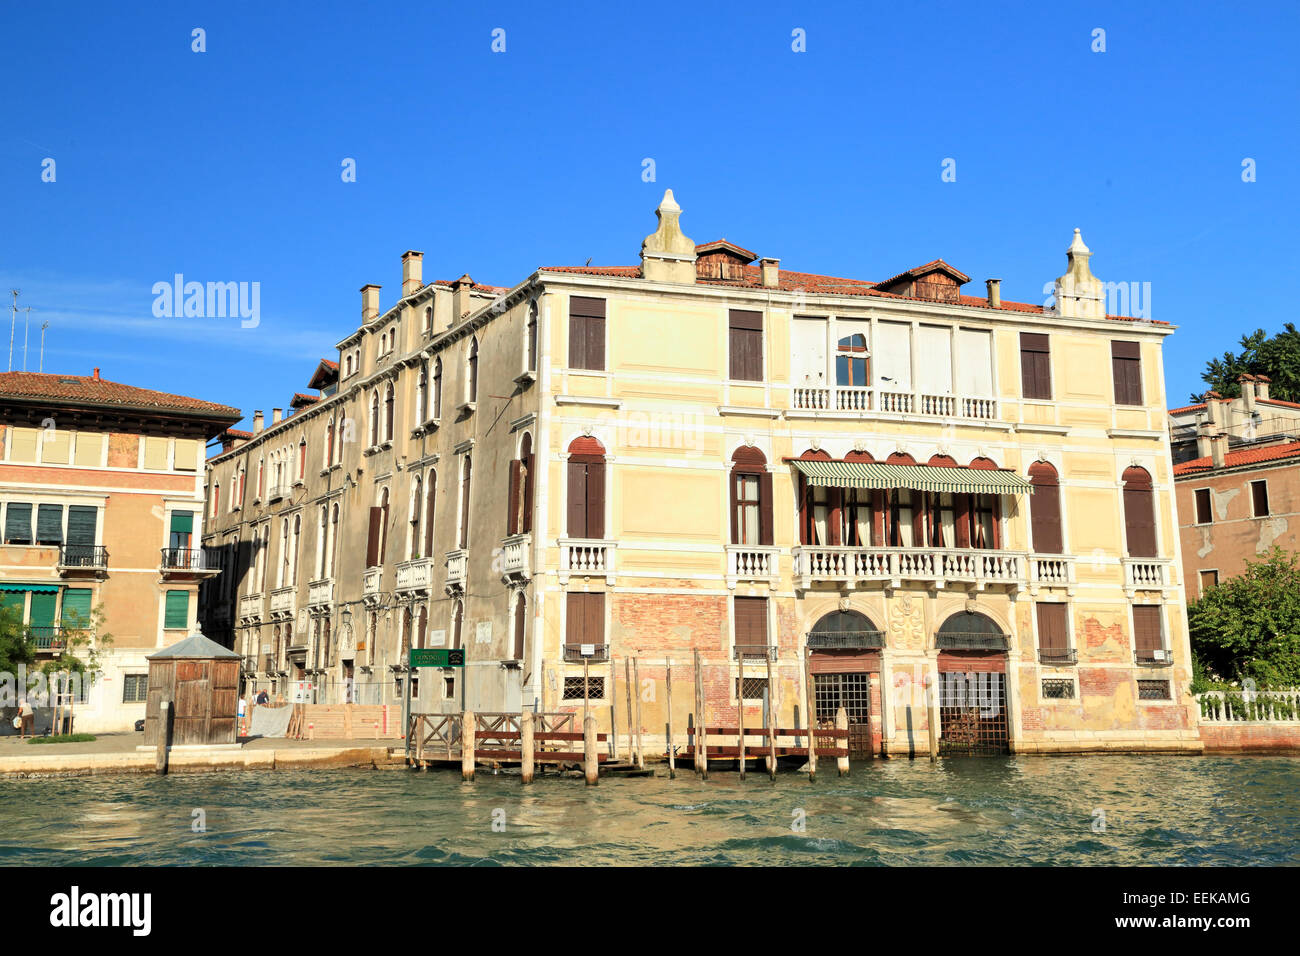 Palazzo cappello malipiero barnabo barnabo hi-res stock photography and ...